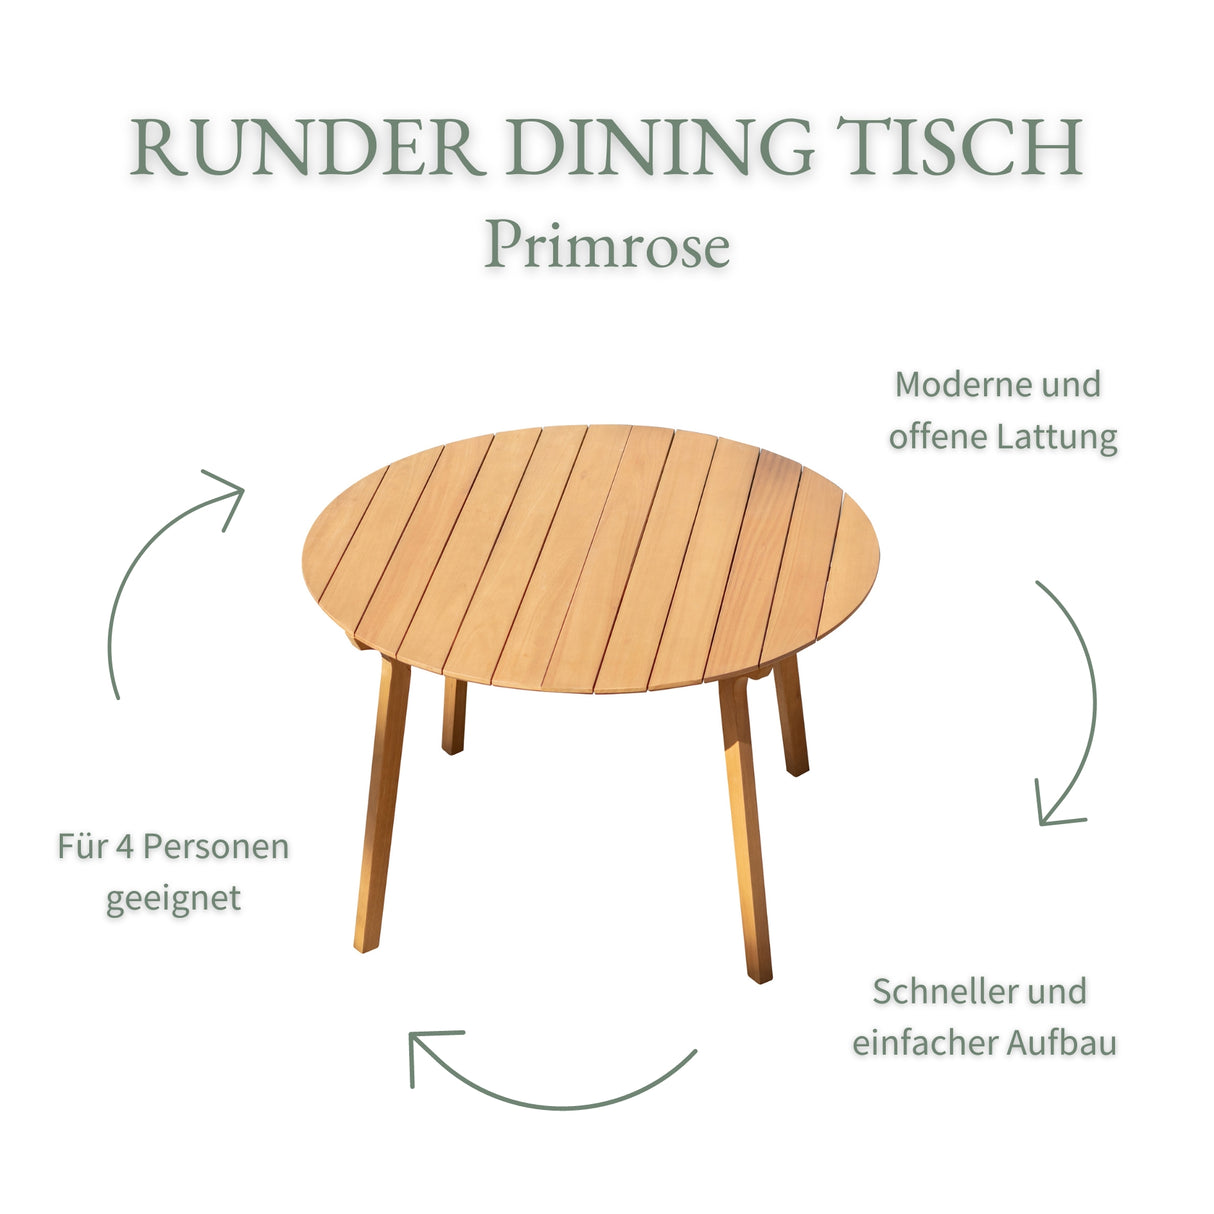 Runder Dining Tisch Primrose